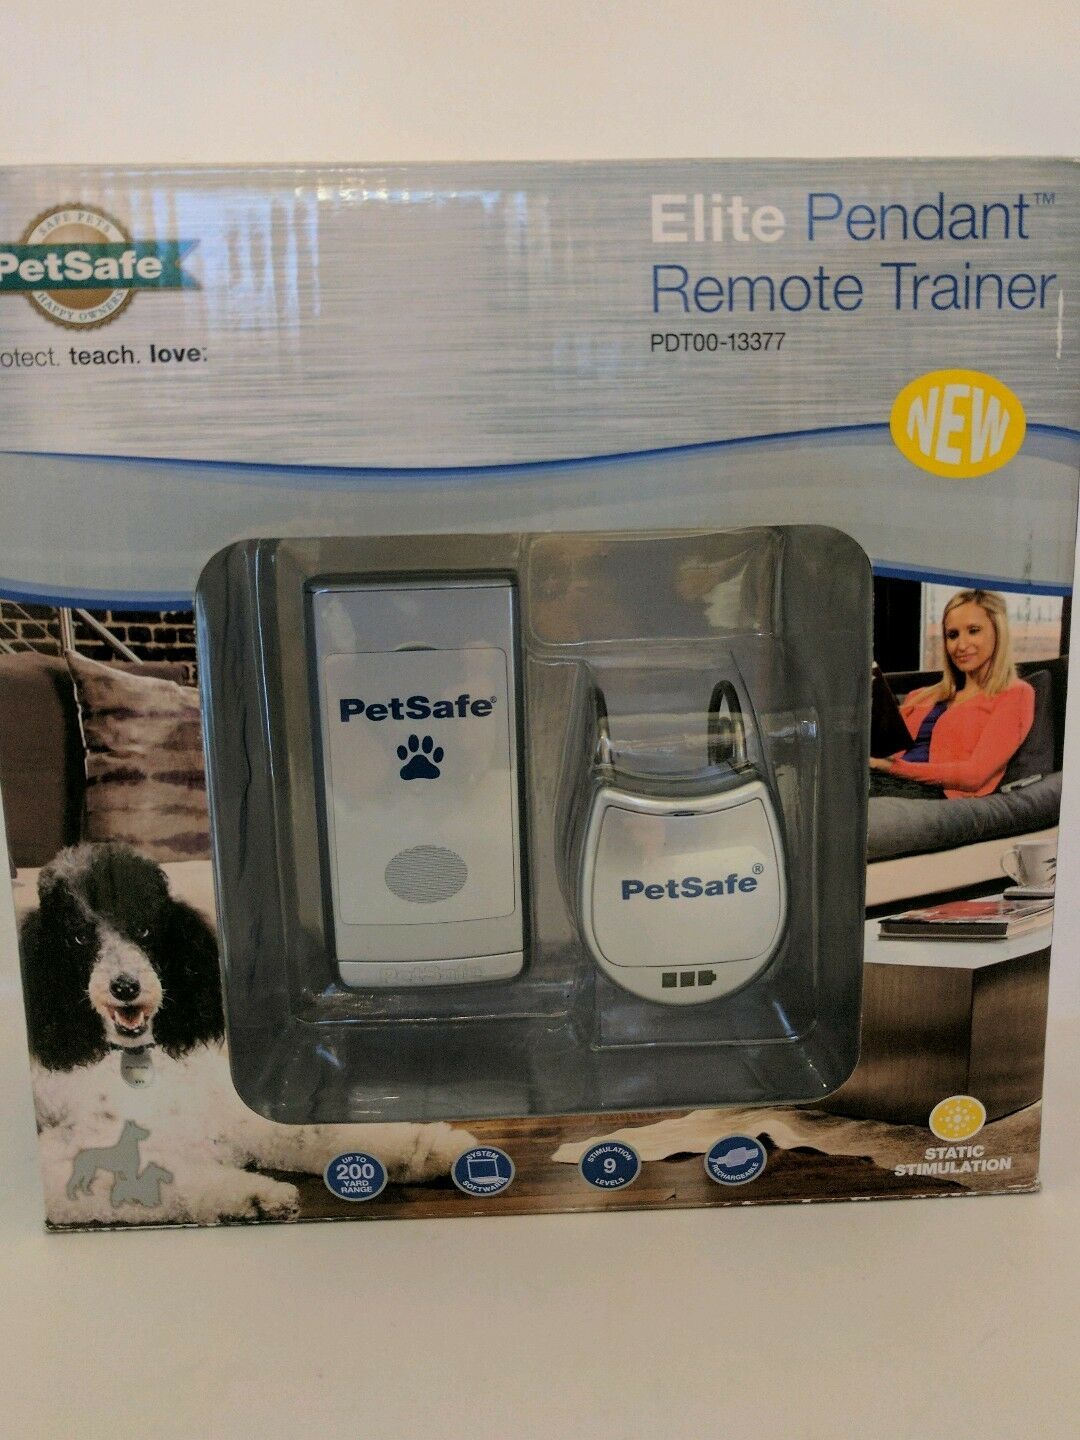 PetSafe Elite Pendant Remote Trainer PDT00-13377 New All Dog breeds sizes - $35.64